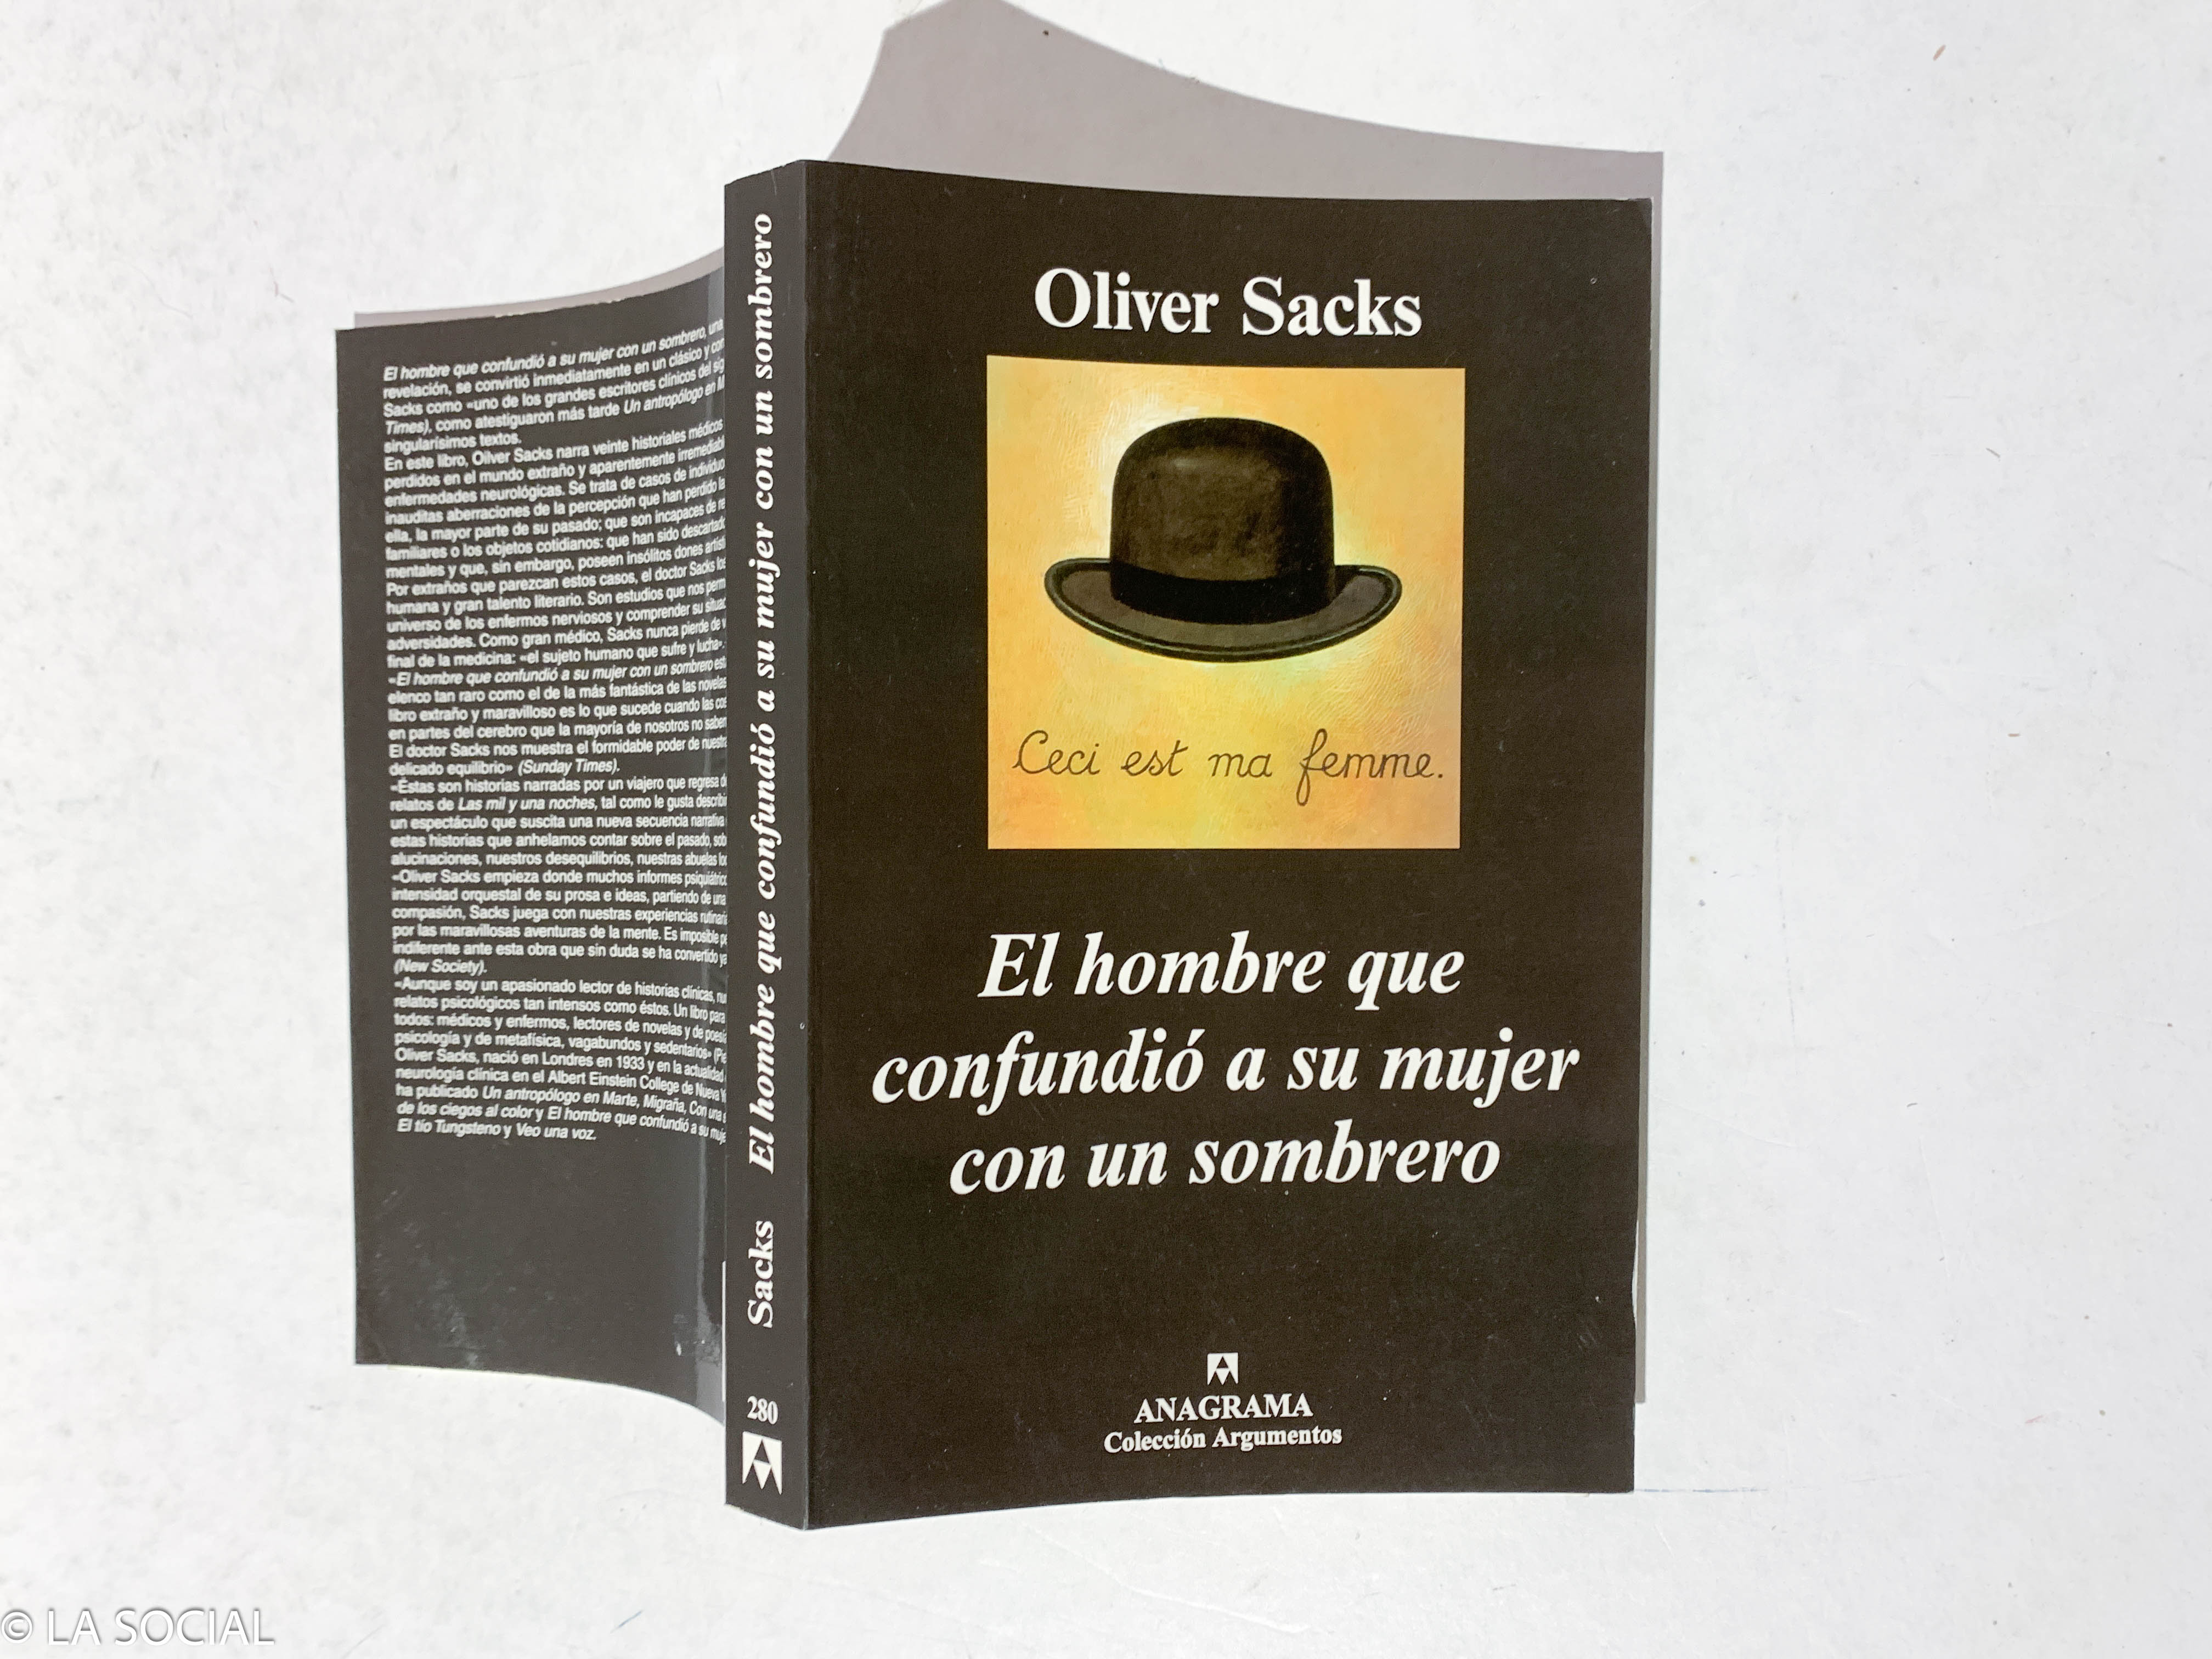 El hombre que confundió a su mujer con un sombrero de Oliver Sacks